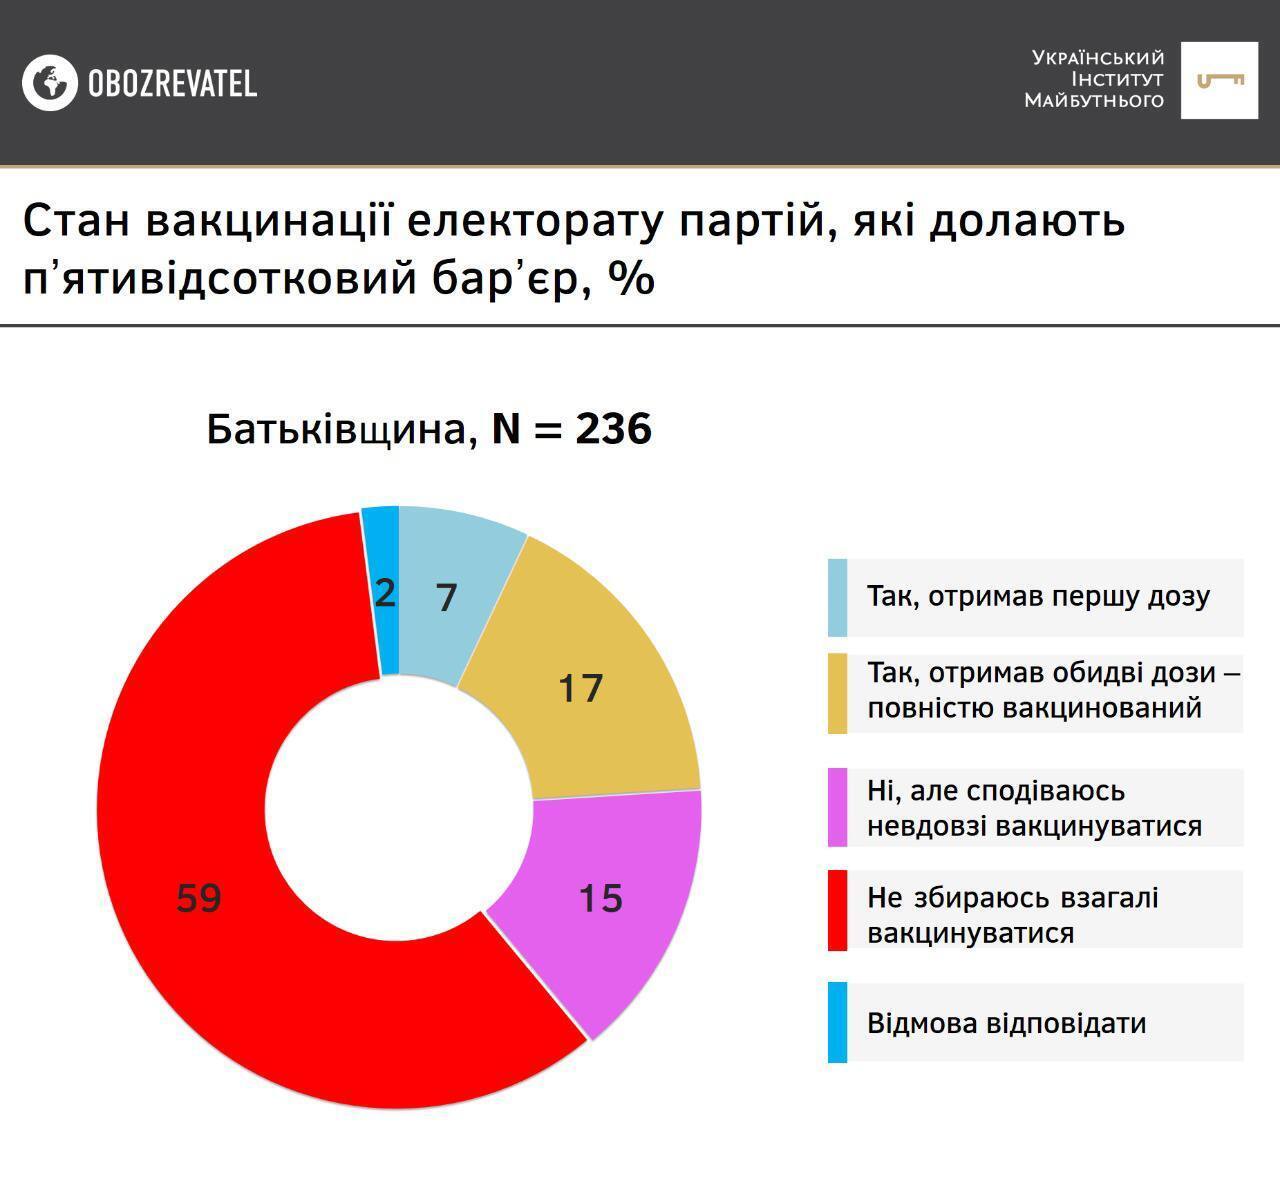 Результати опитування серед прихильників партії "Батьківщина"